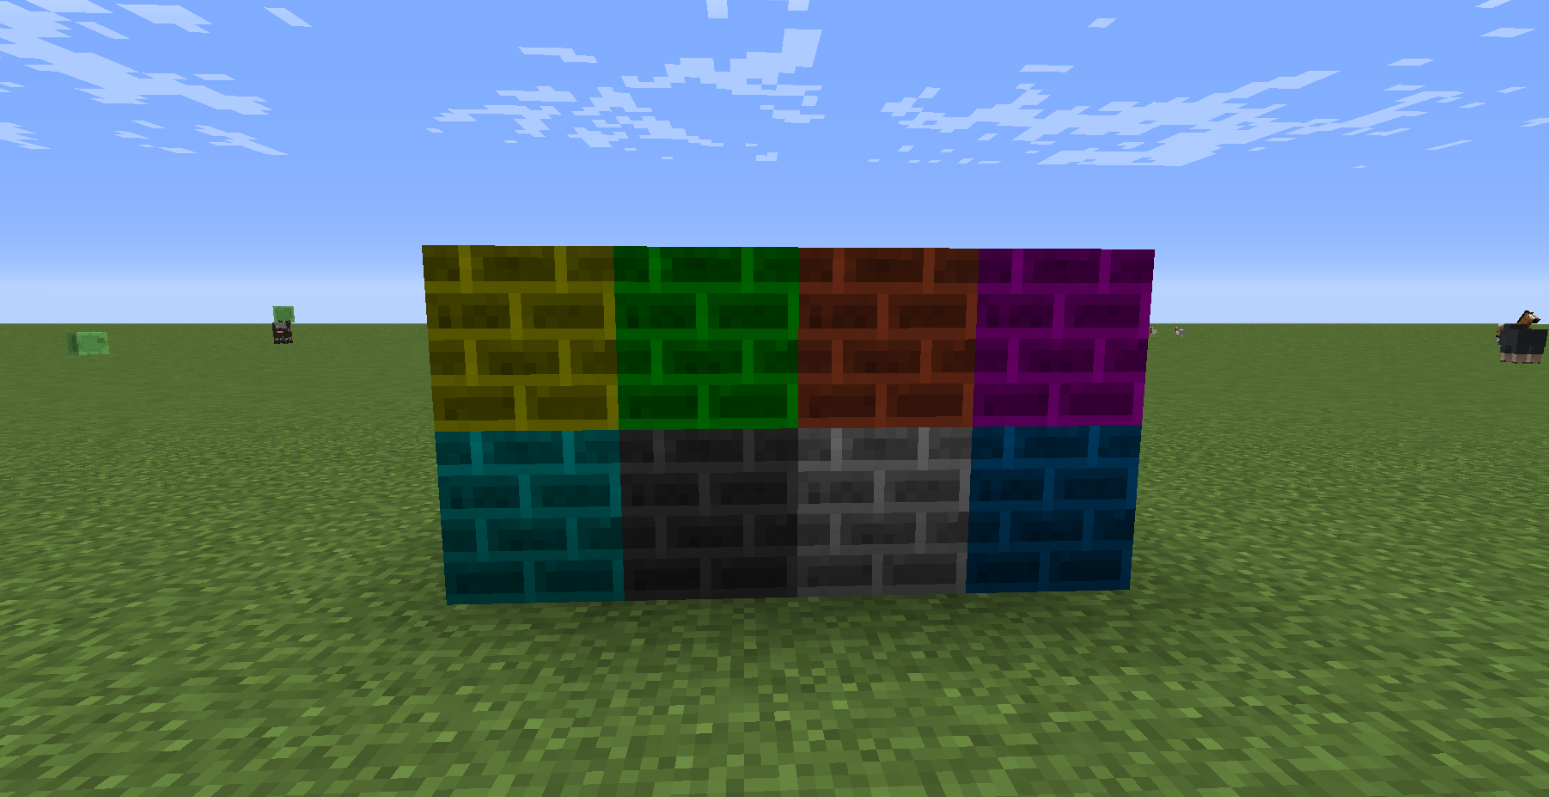 All Colored Bricks